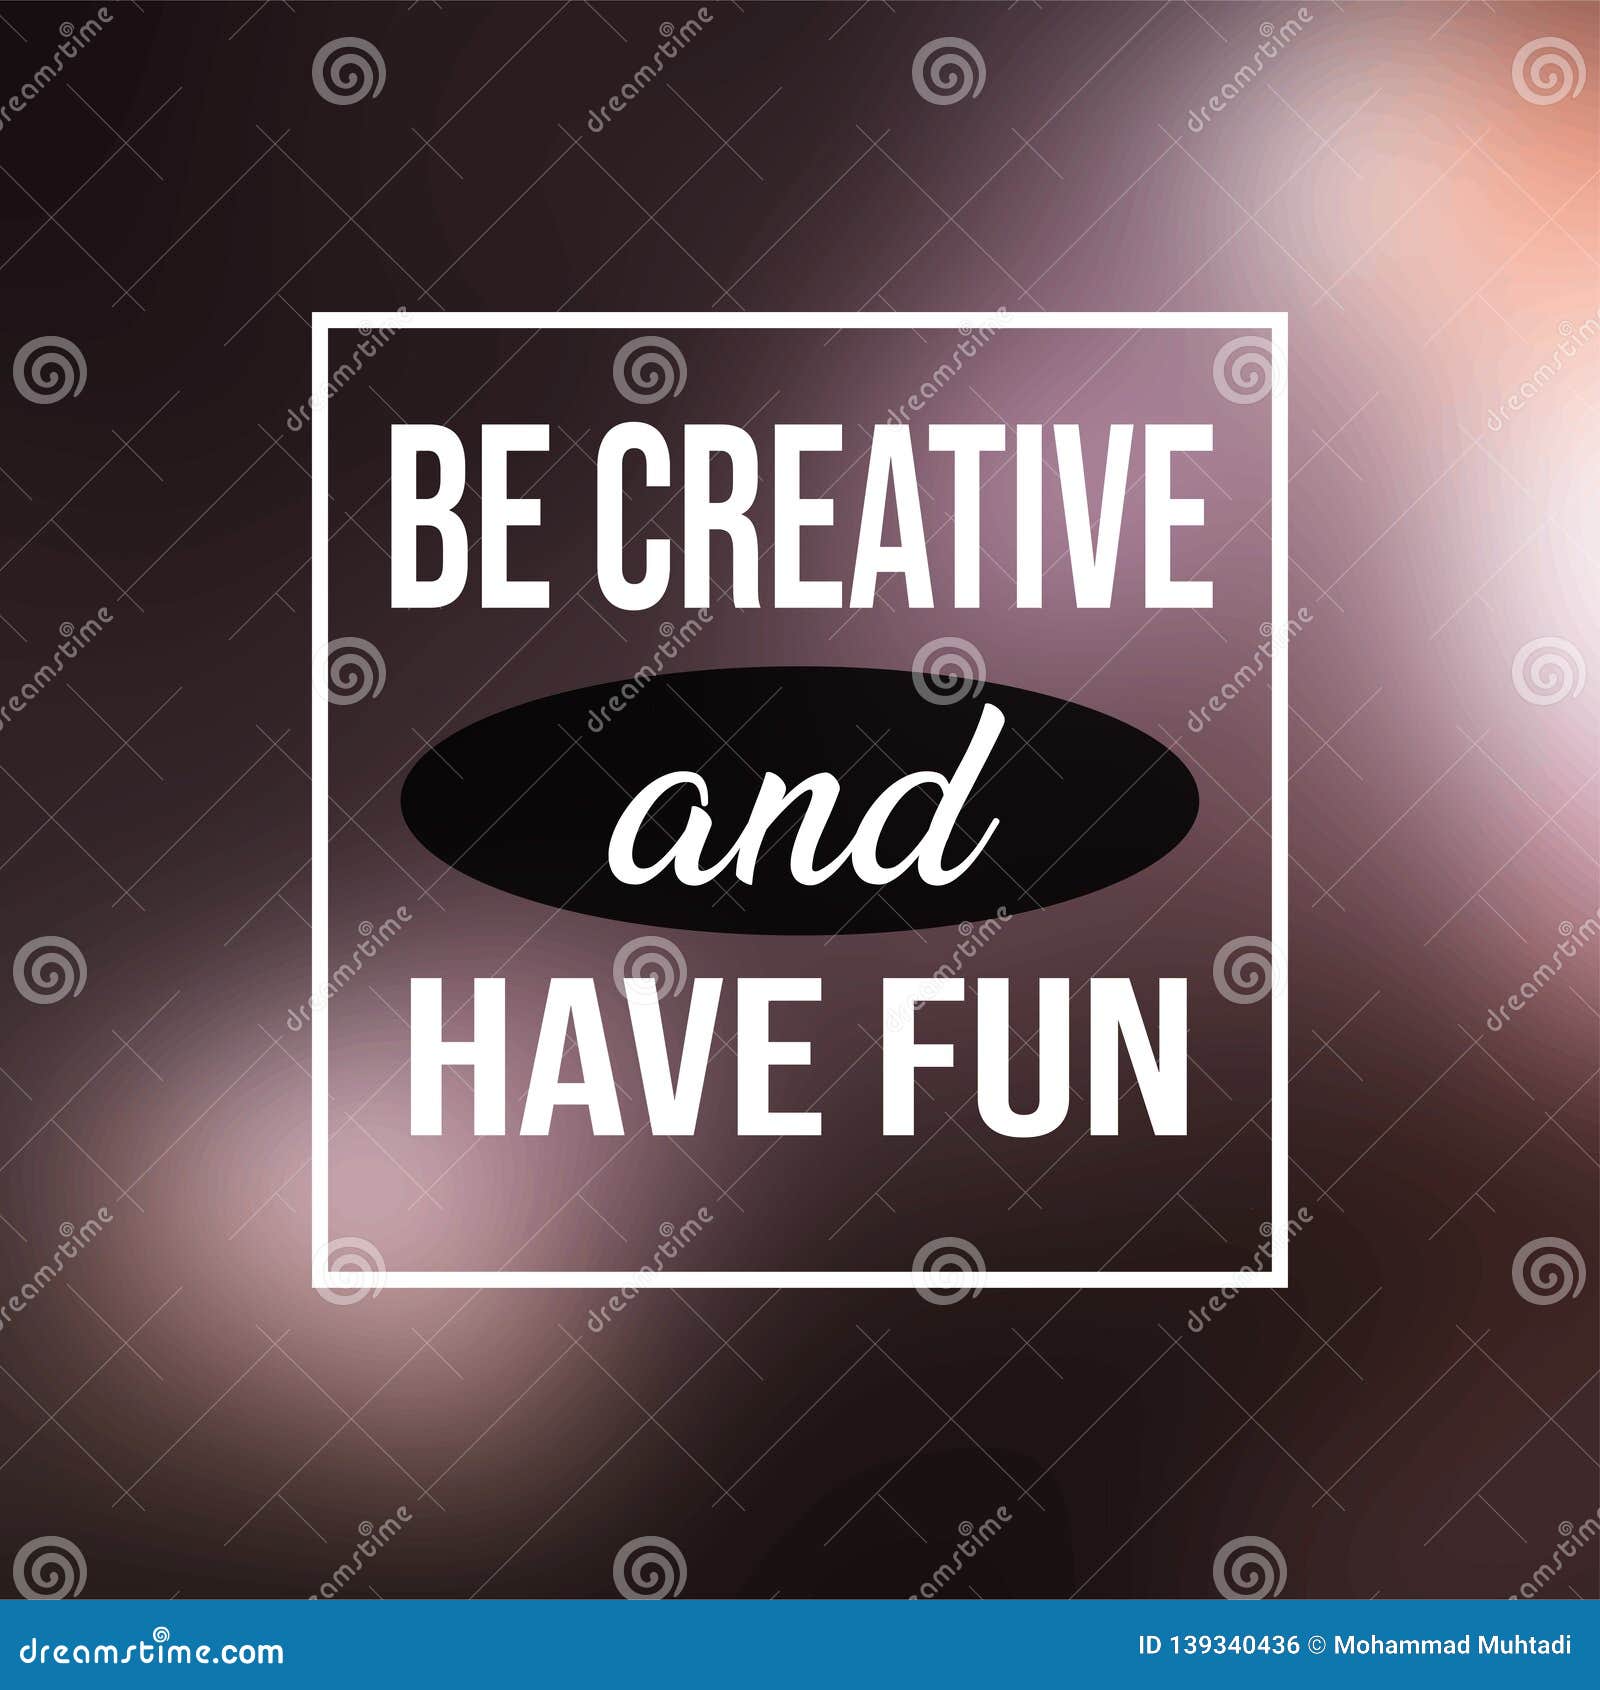 Verwonderlijk Be Creative And Have Fun. Life Quote With Modern Background Vector EE-94